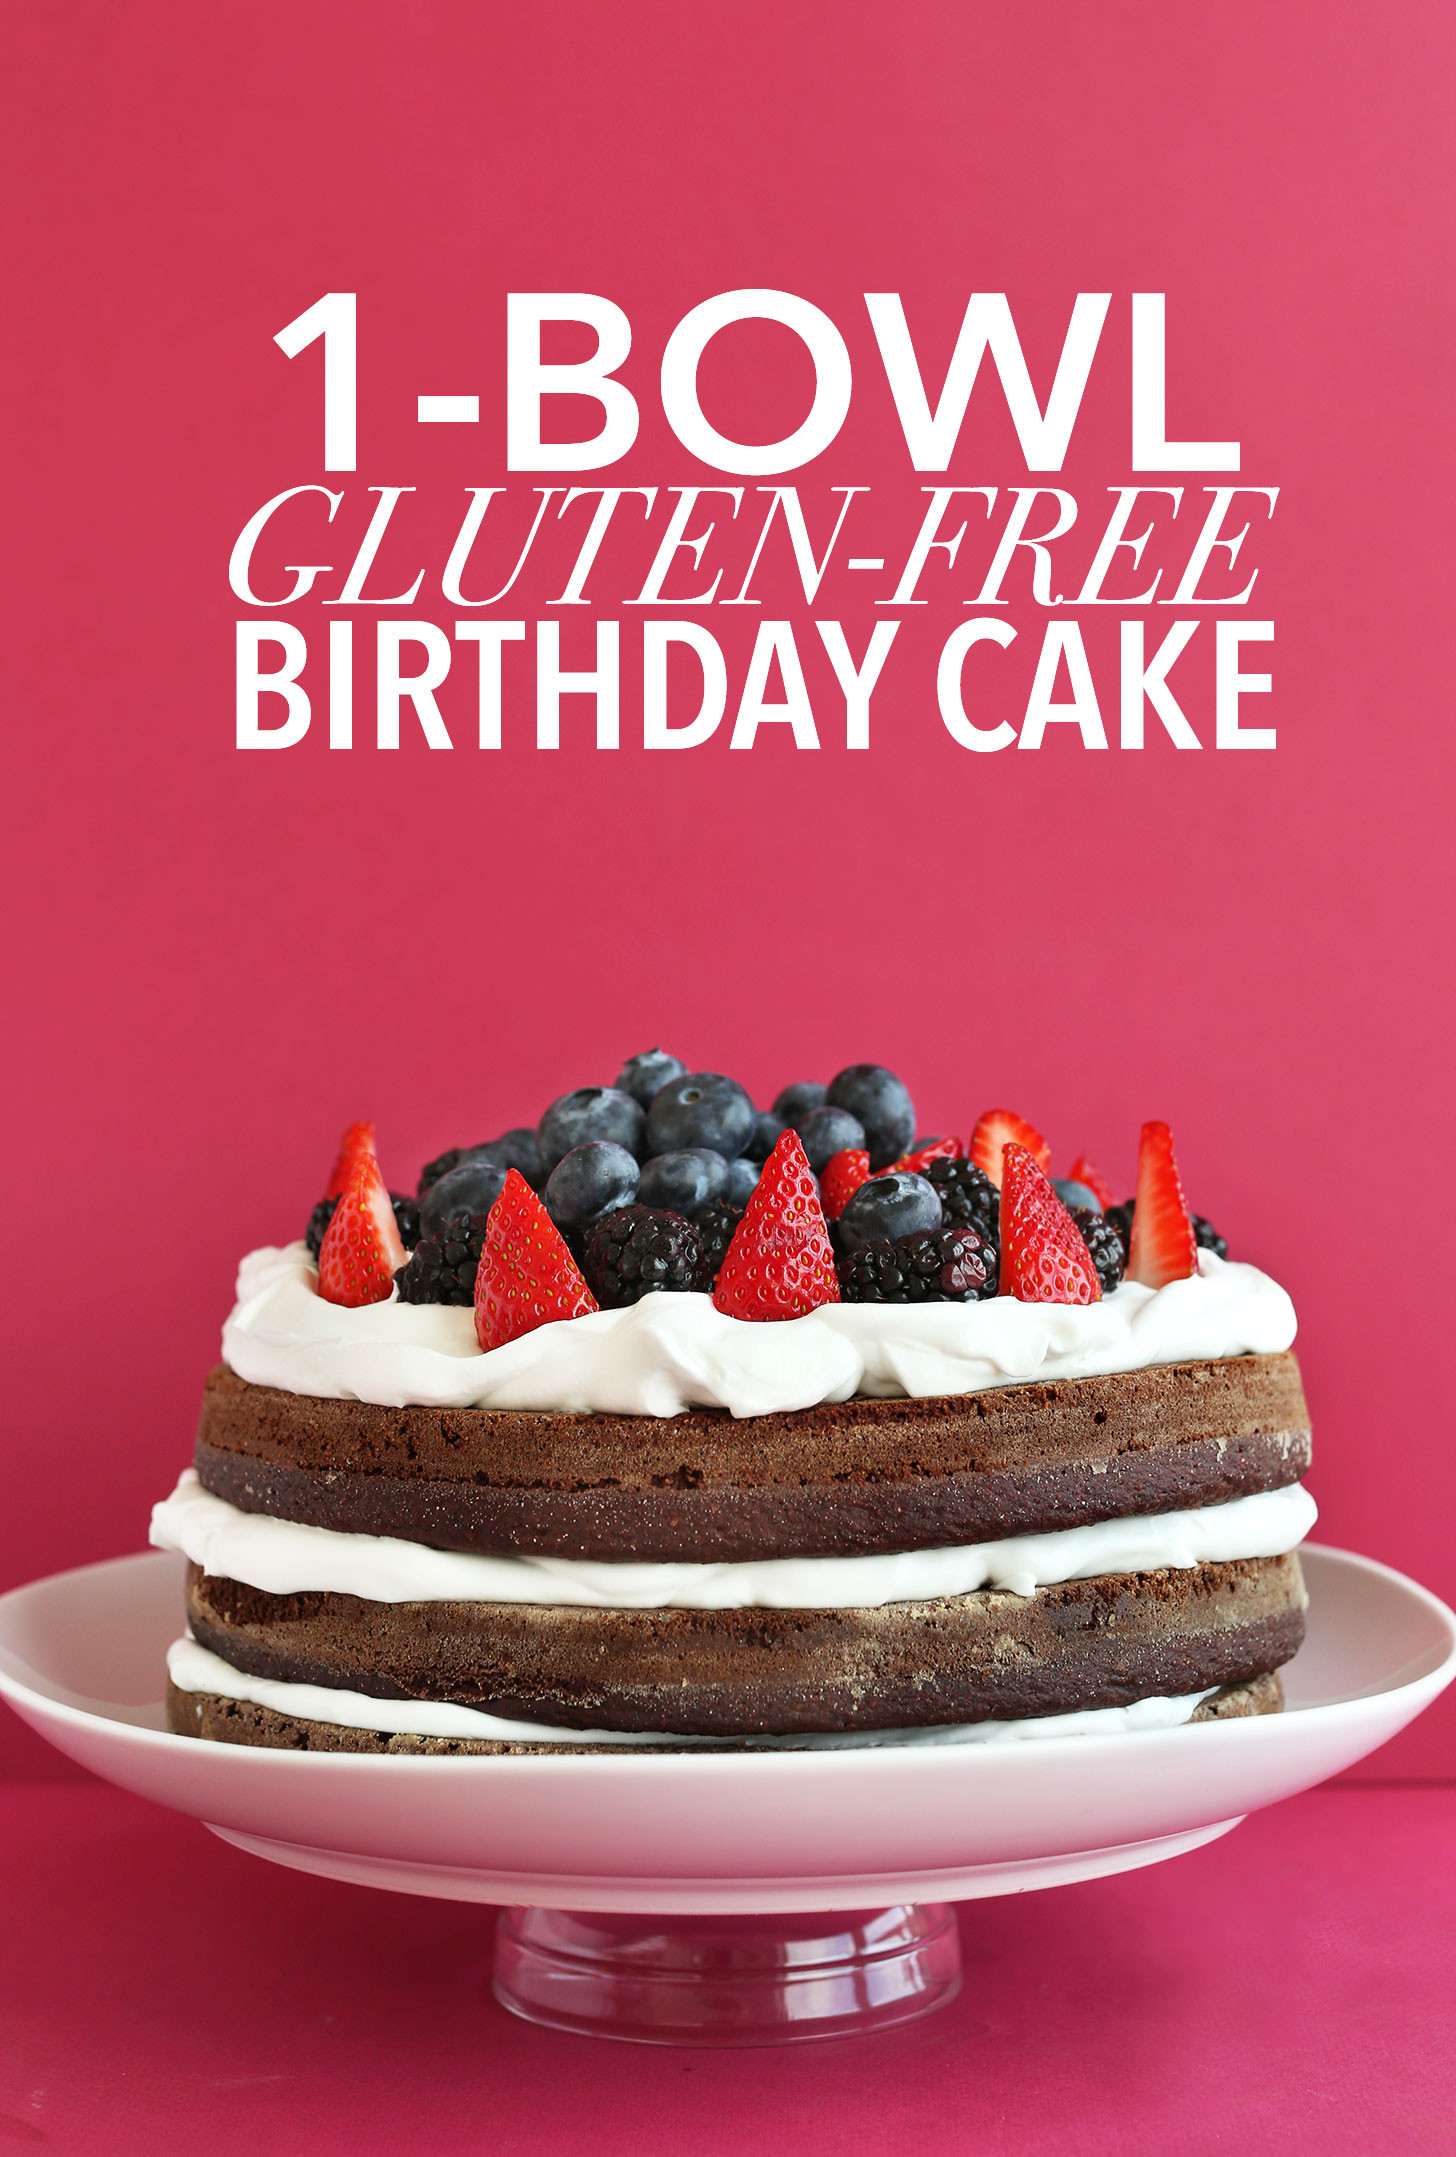 Best ideas about Gluten Free Birthday Cake Recipe
. Save or Pin Gluten Free Birthday Cake Now.